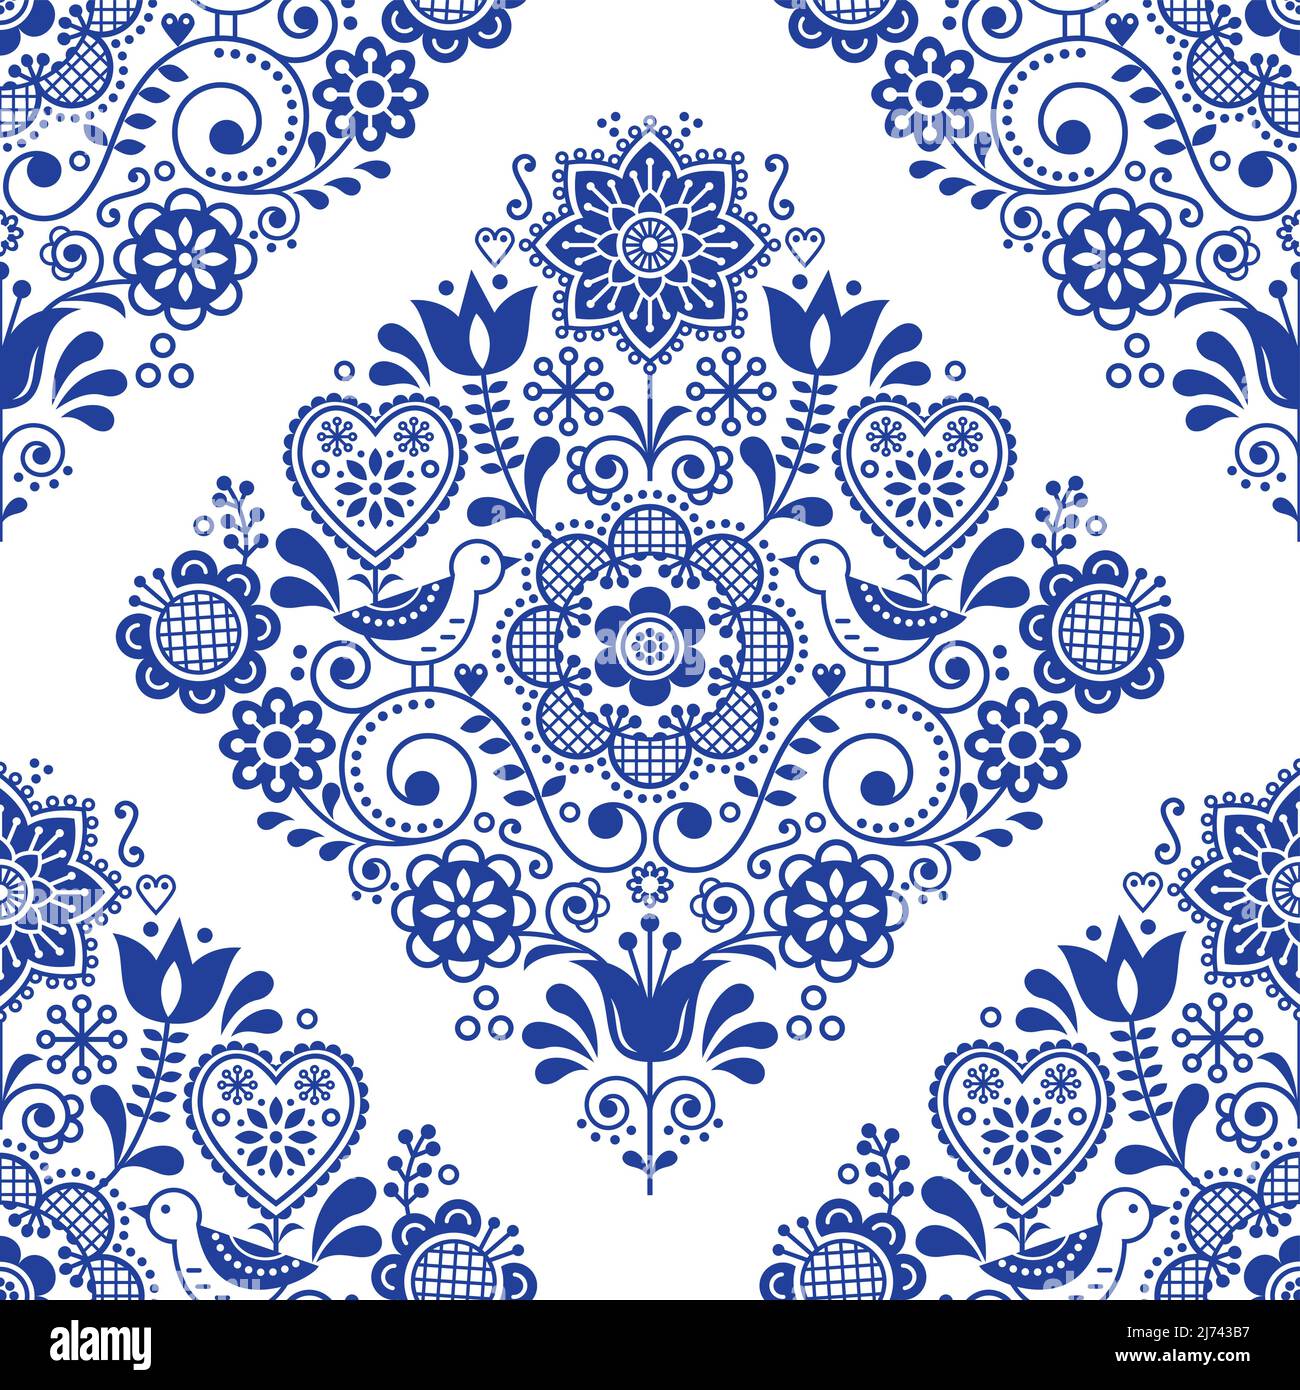 Skandinavisches nahtloses Folk-Art-Vektormuster mit Vögeln und Blumen, niedliches nordisches Marineblau mit sich wiederholenden Blumenmustern - Dekor mit Textil- oder Stoffdruck Stock Vektor